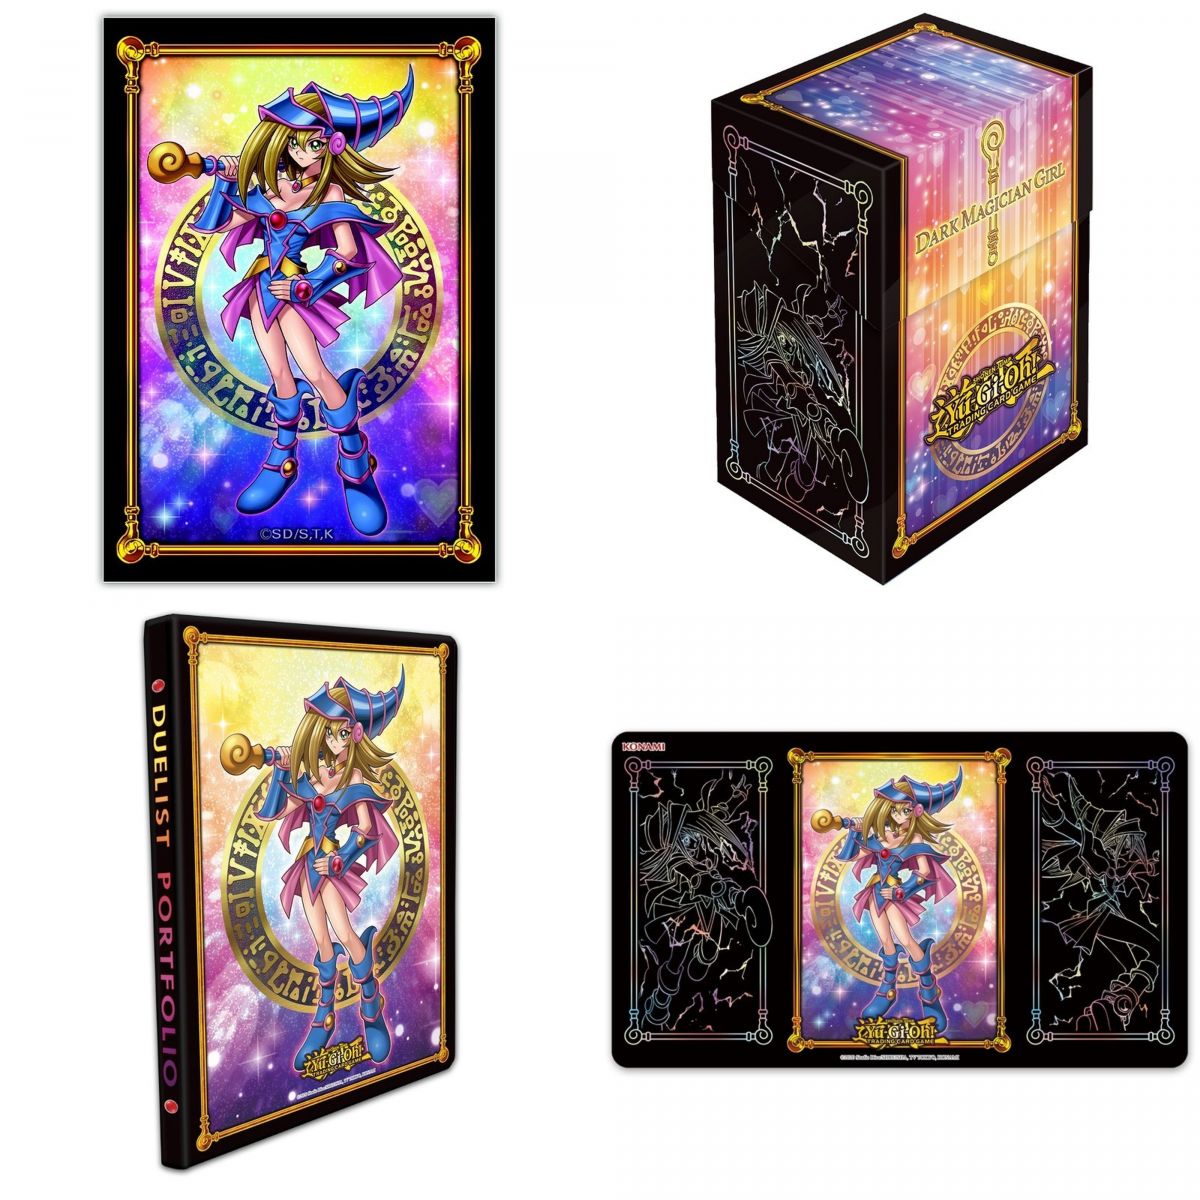 Item Yu Gi Oh! - Pack - Dark Magician Bundle Full Pack